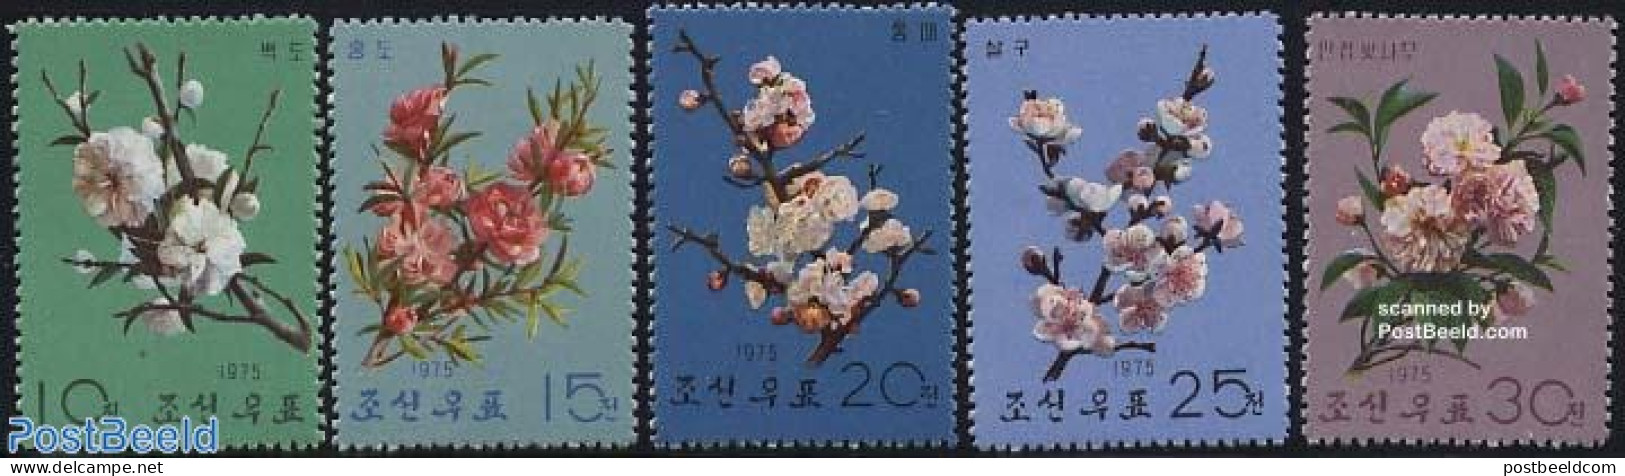 Korea, North 1975 Tree Flowers 5v, Mint NH, Nature - Flowers & Plants - Korea (Noord)